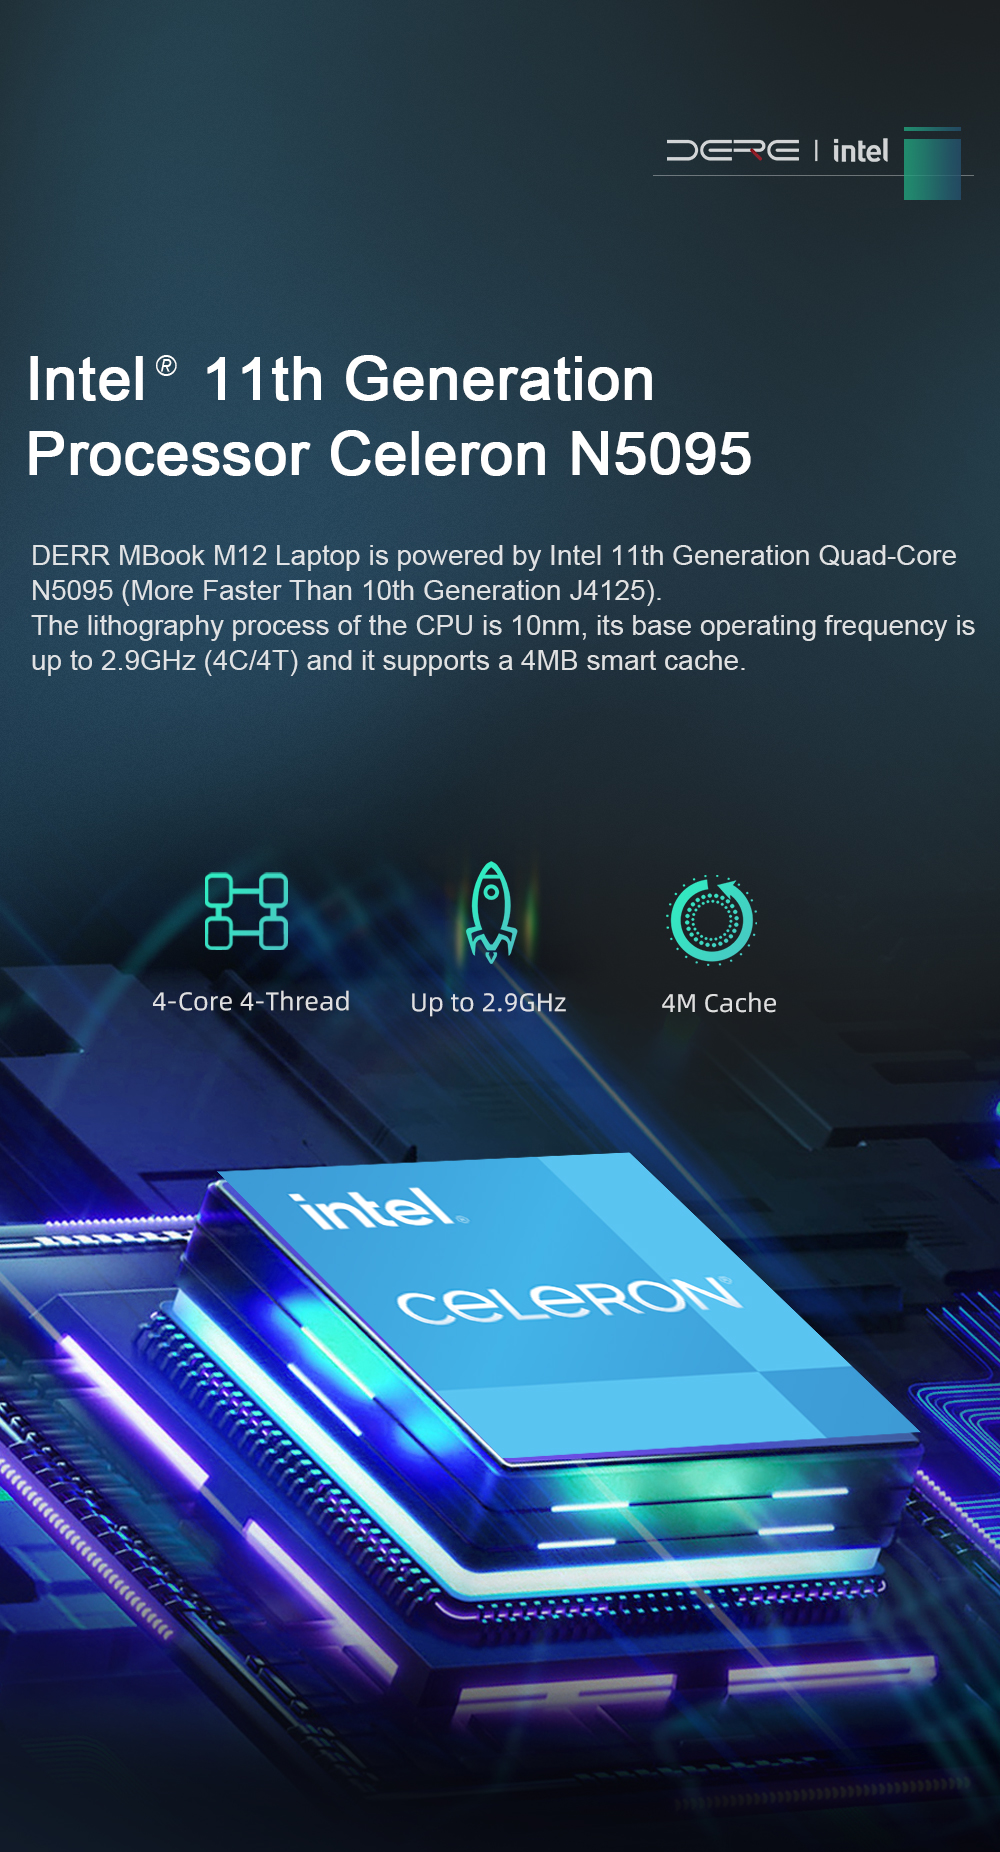 Intel 11th Generation Celeron N5095 Processor